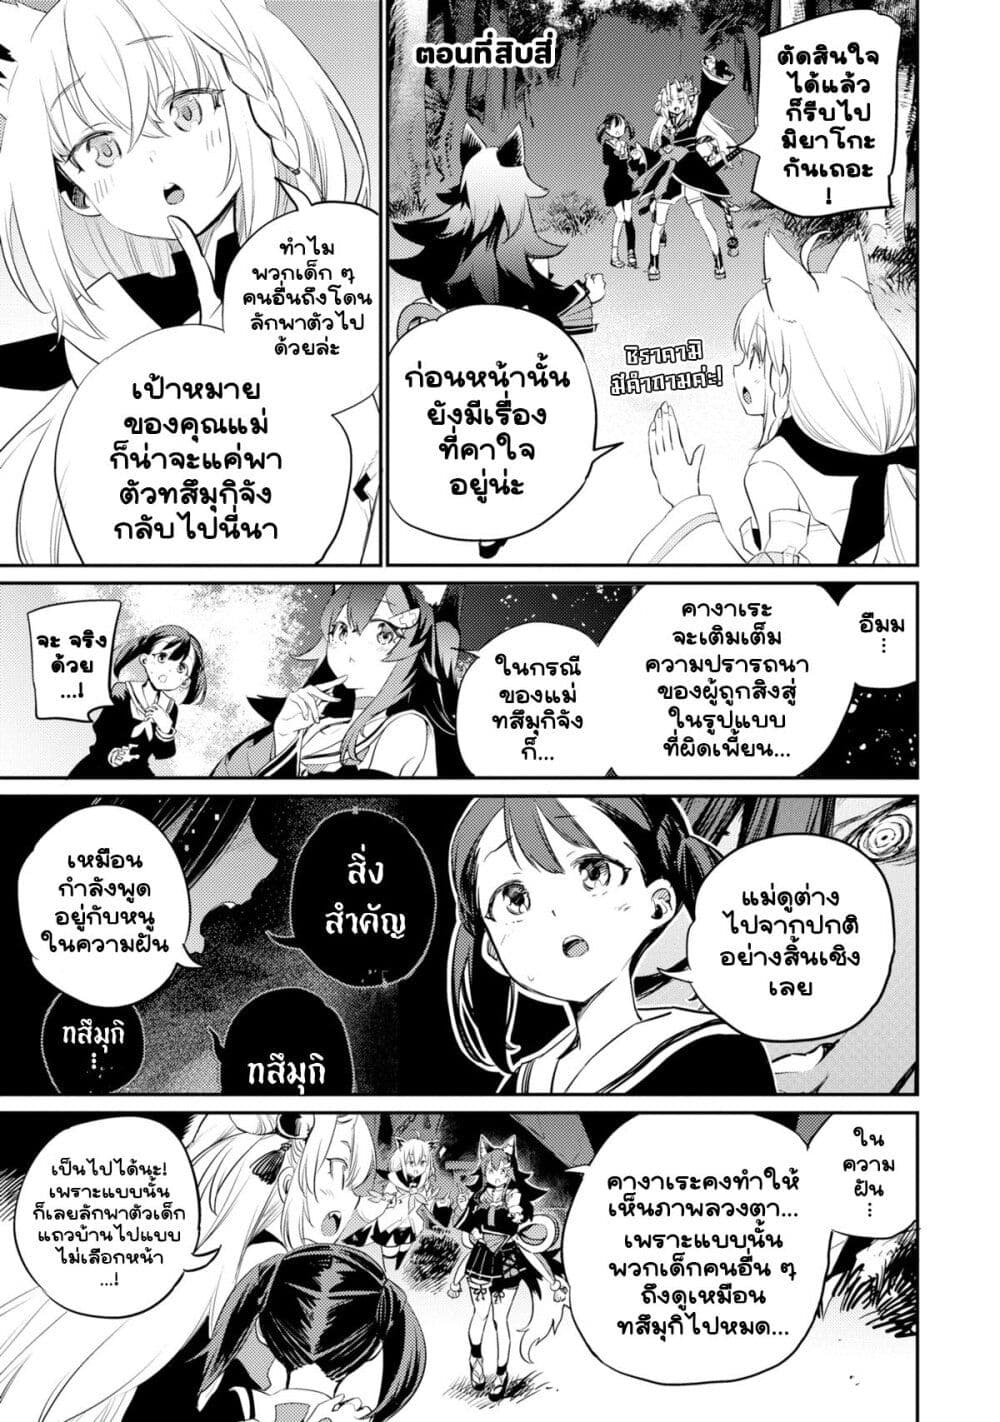 Holoearth Chronicles SideE ~Yamato Phantasia~ ตอนที่ 14 (1)